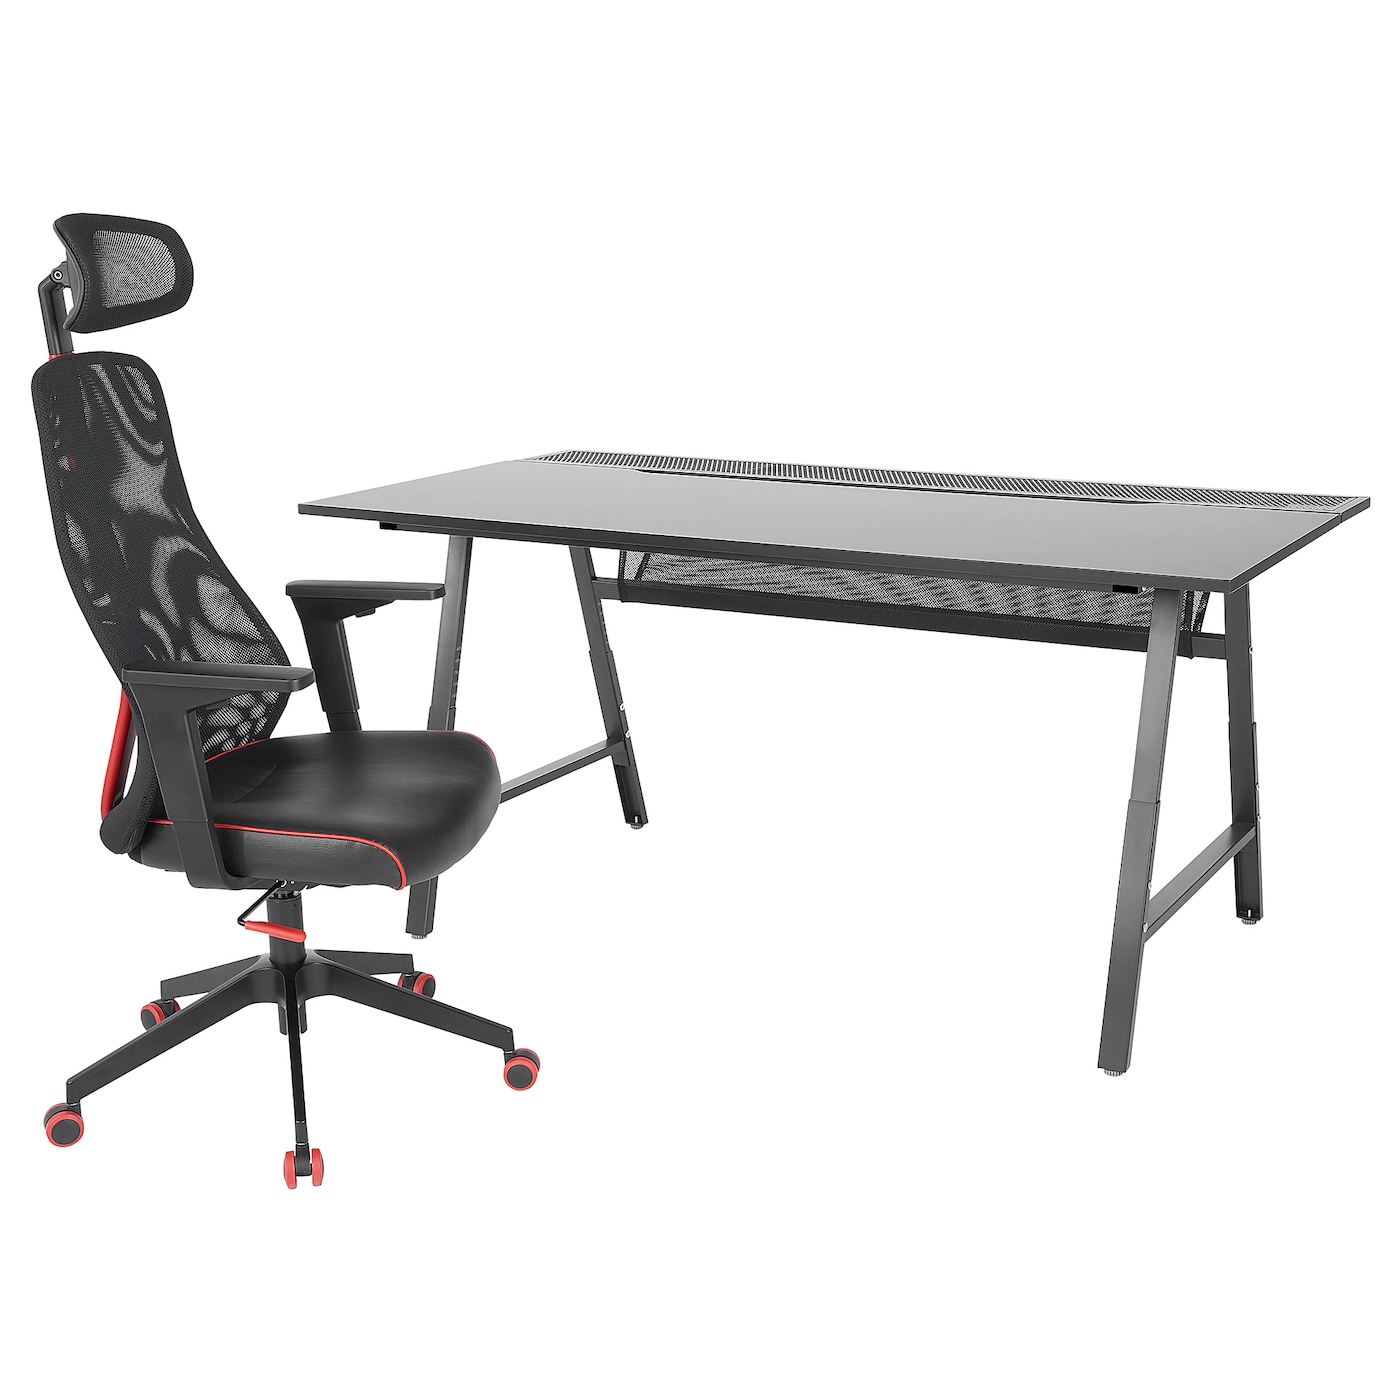 Игровой стол и стул - IKEA UTESPELARE/MATCHSPEL, черный, 166х79х9 см, УТЕСПЕЛАРЕ/МАТЧСПЕЛ ИКЕА